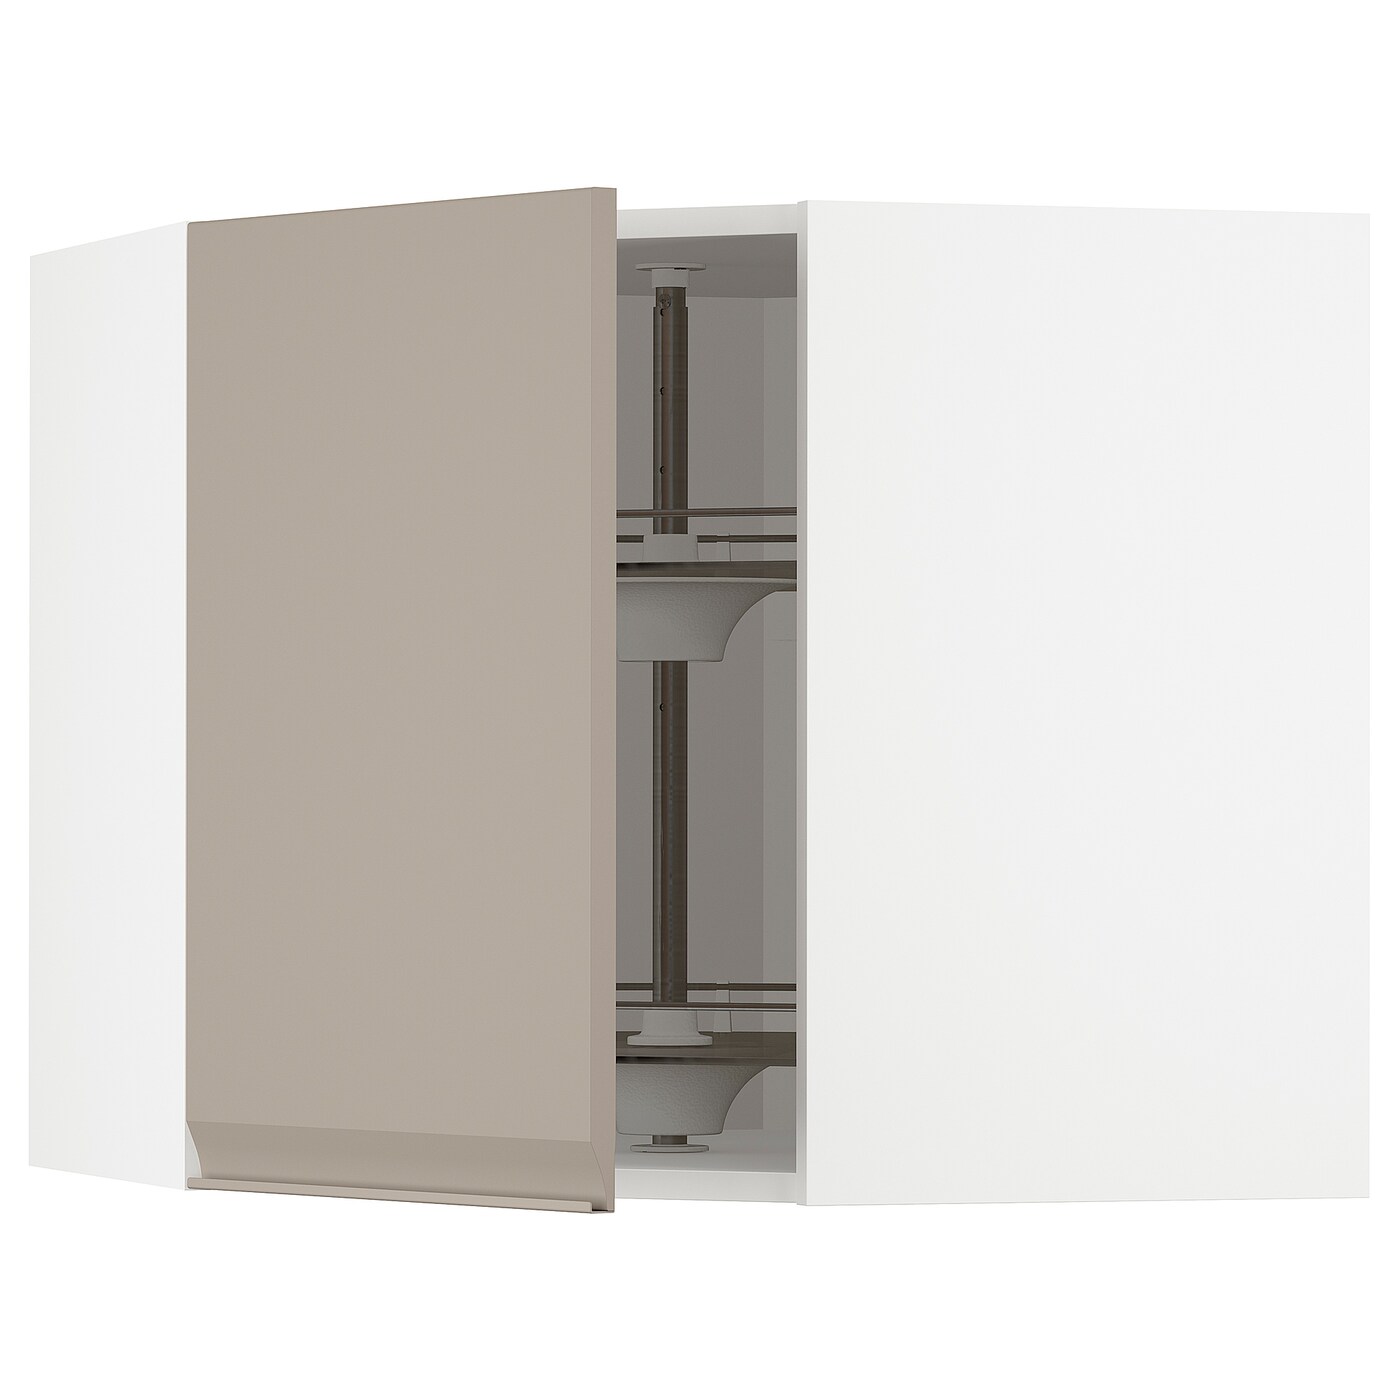 Угловой навесной шкаф с каруселью - METOD  IKEA/  МЕТОД ИКЕА, 60х68 см, белый/светло-коричневый